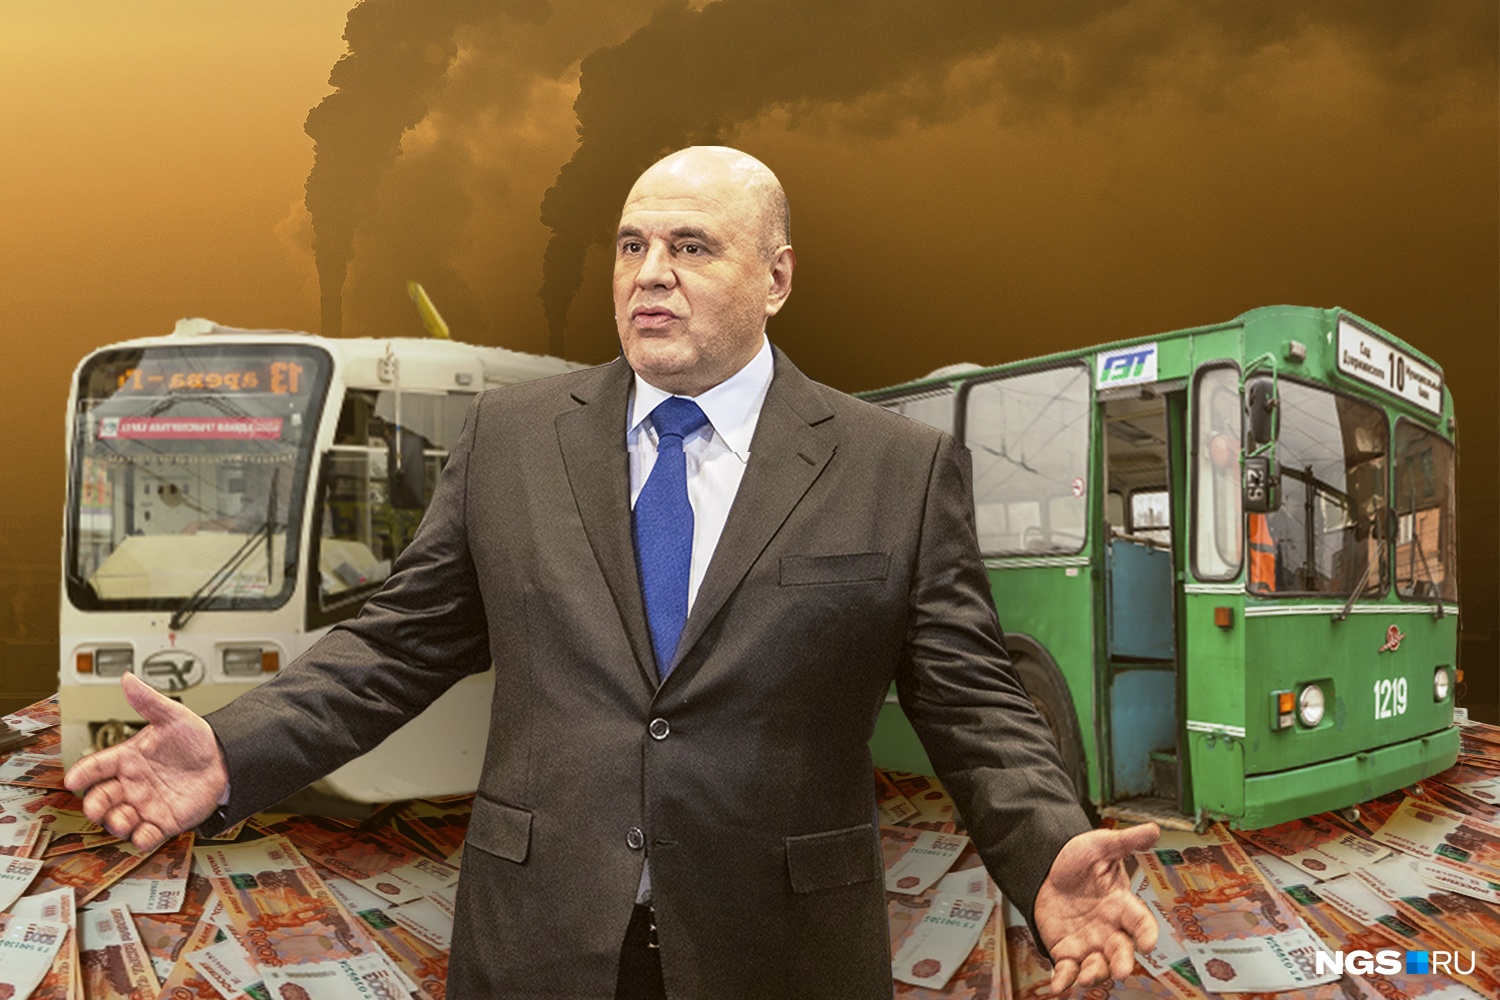 Дышим спокойно: Мишустин дал Красноярску 2,4 млрд на электротранспорт, чтобы воздух стал чище. А Новосибирску — нет